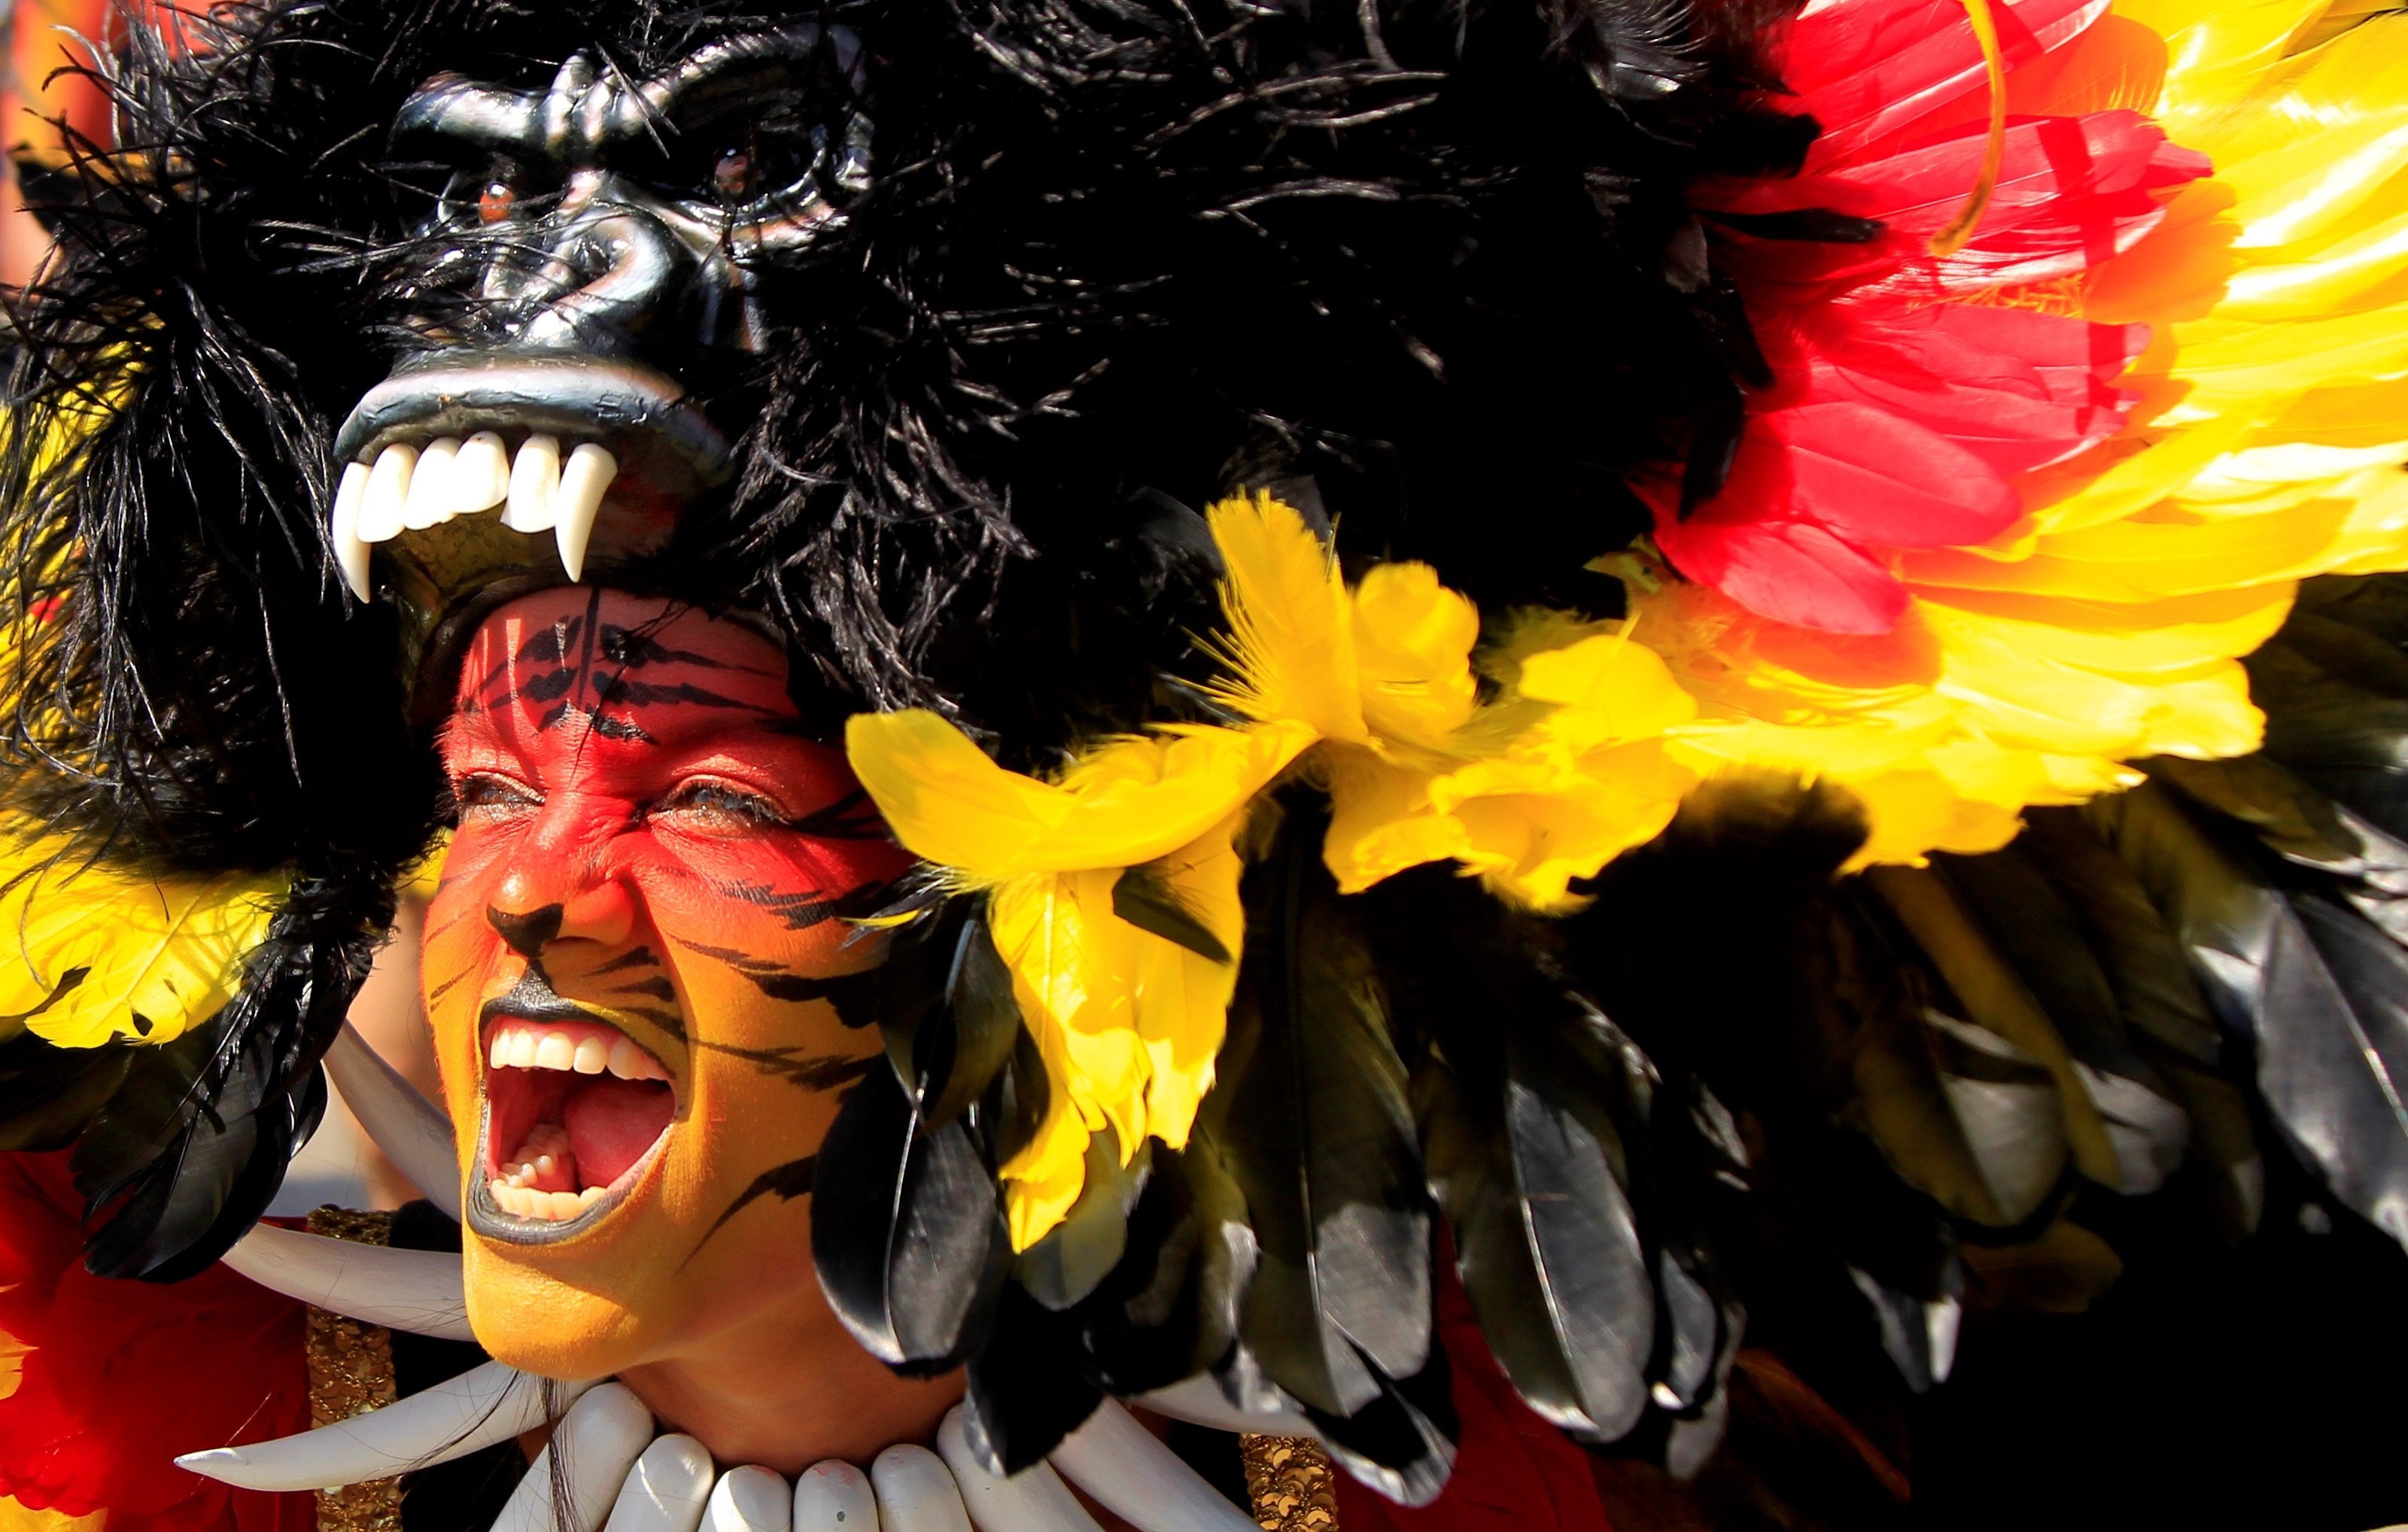 Cancelado el Carnaval de Barranquilla por contagios masivos de covid-19 EFE/Ricardo Maldonado/Archivo
